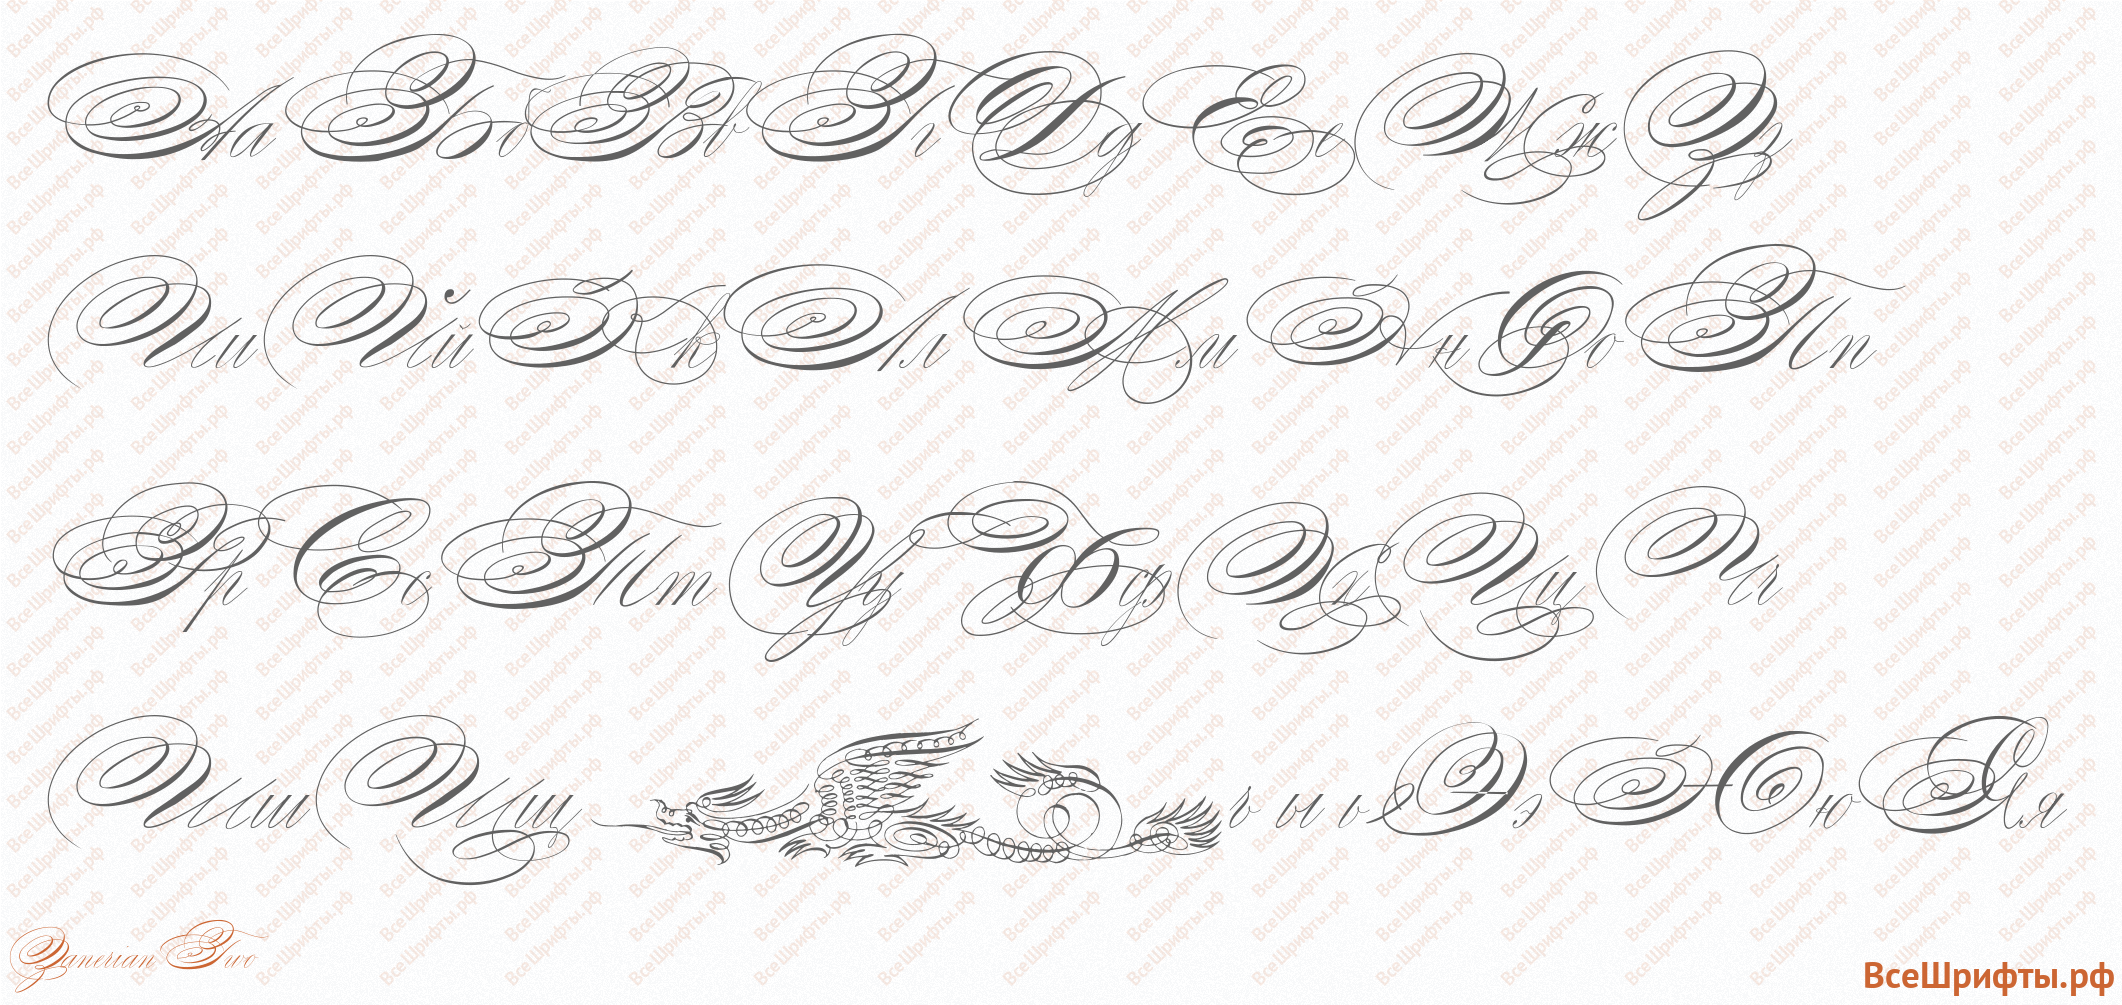 Шрифт runes regular 400 скачать в форматах eot, otf, svg, ttf, woff, woff2, zip бесплатно для сайта